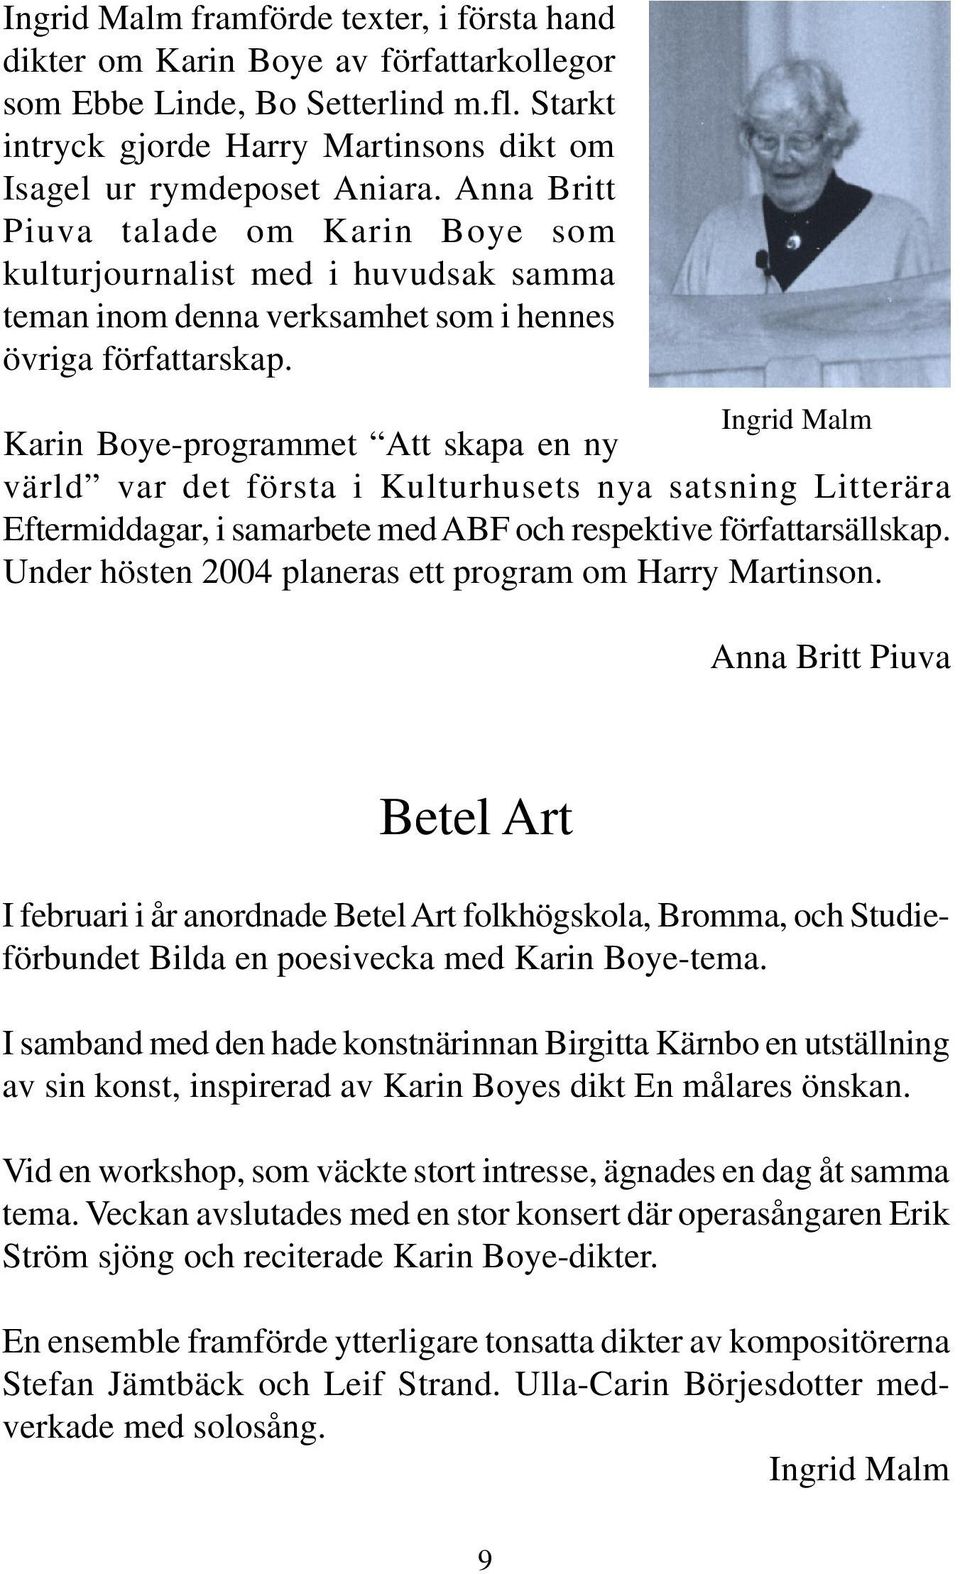 Ingrid Malm Karin Boye-programmet Att skapa en ny värld var det första i Kulturhusets nya satsning Litterära Eftermiddagar, i samarbete med ABF och respektive författarsällskap.